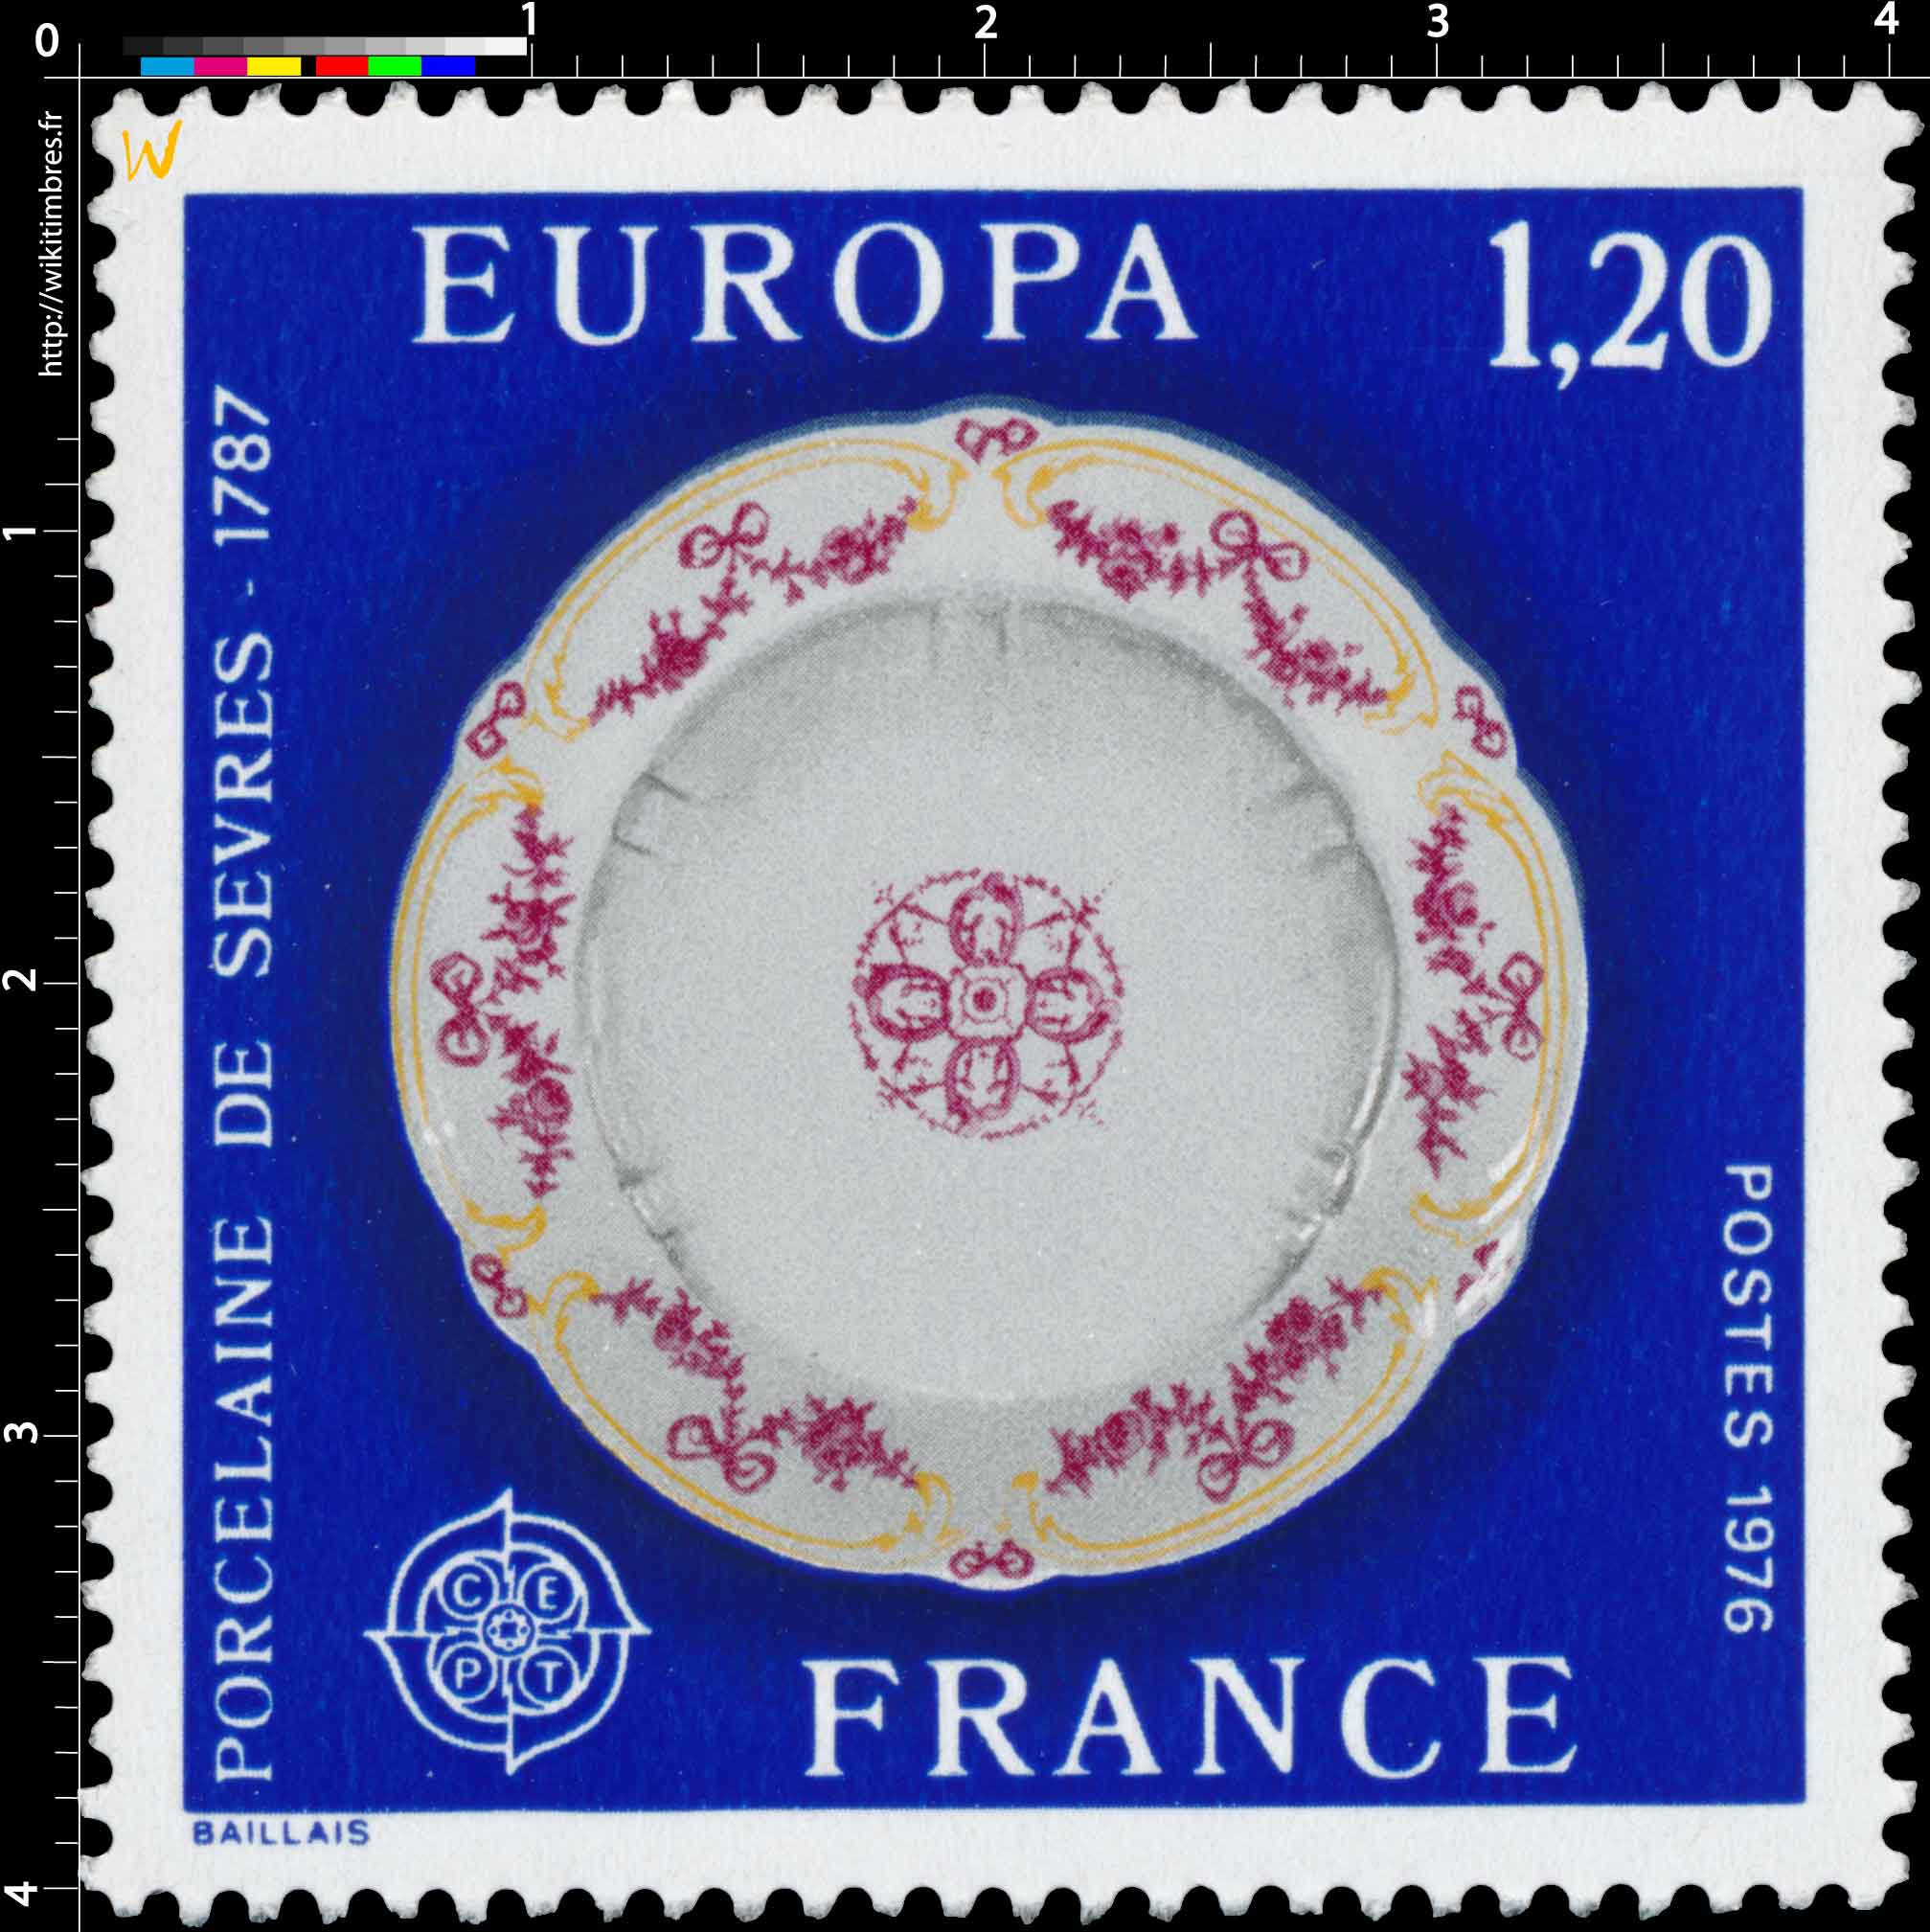 1976 EUROPA CEPT PORCELAINE DE SÈVRES -1787